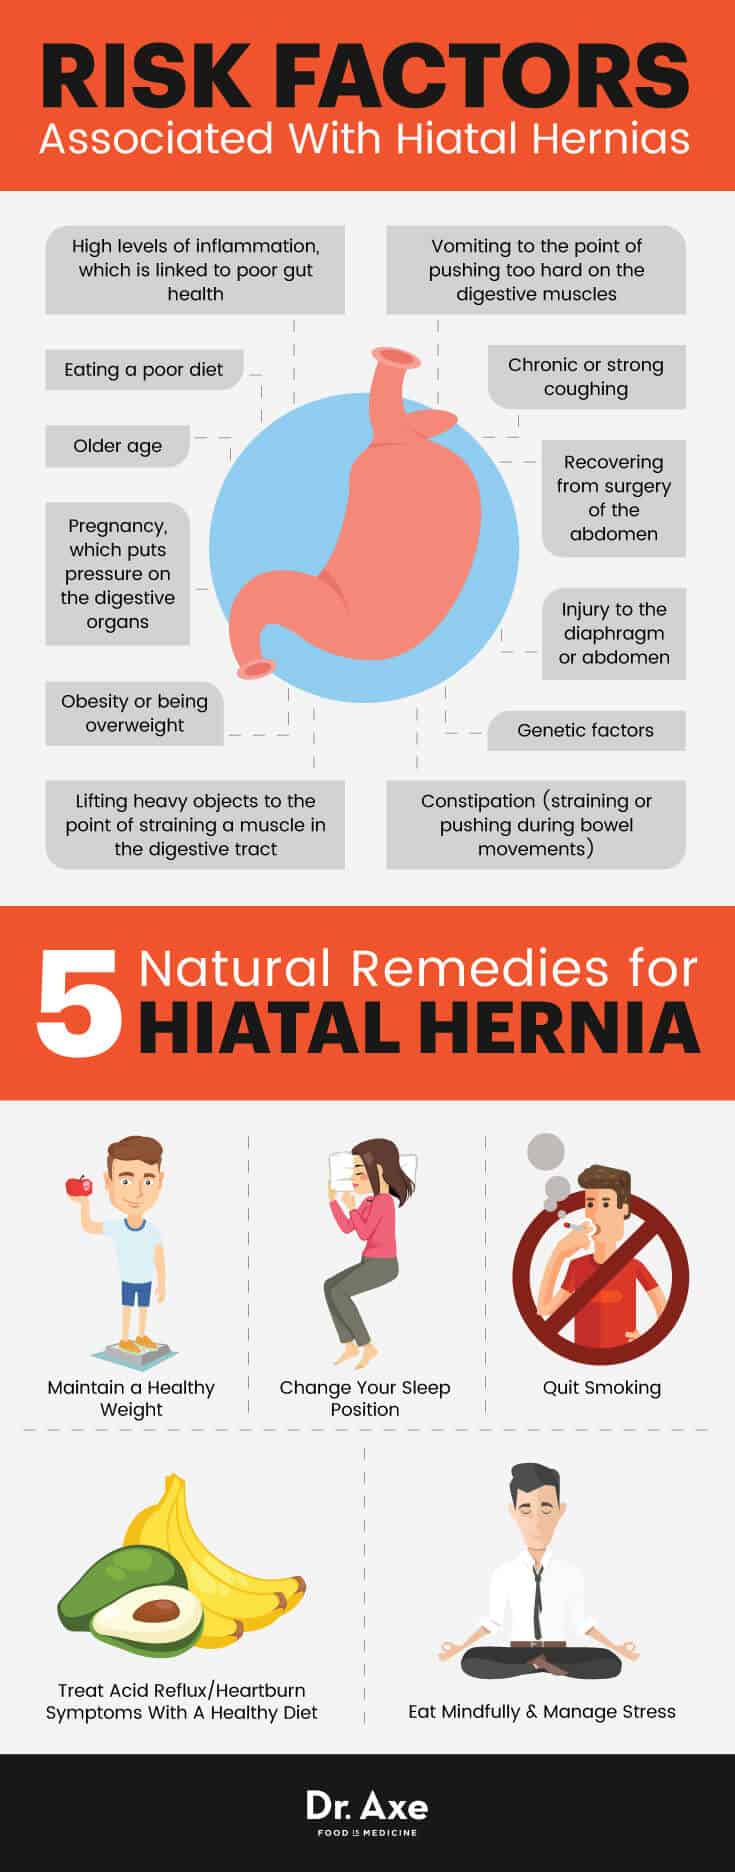 Hiatal hernia risk factors & natural treatment